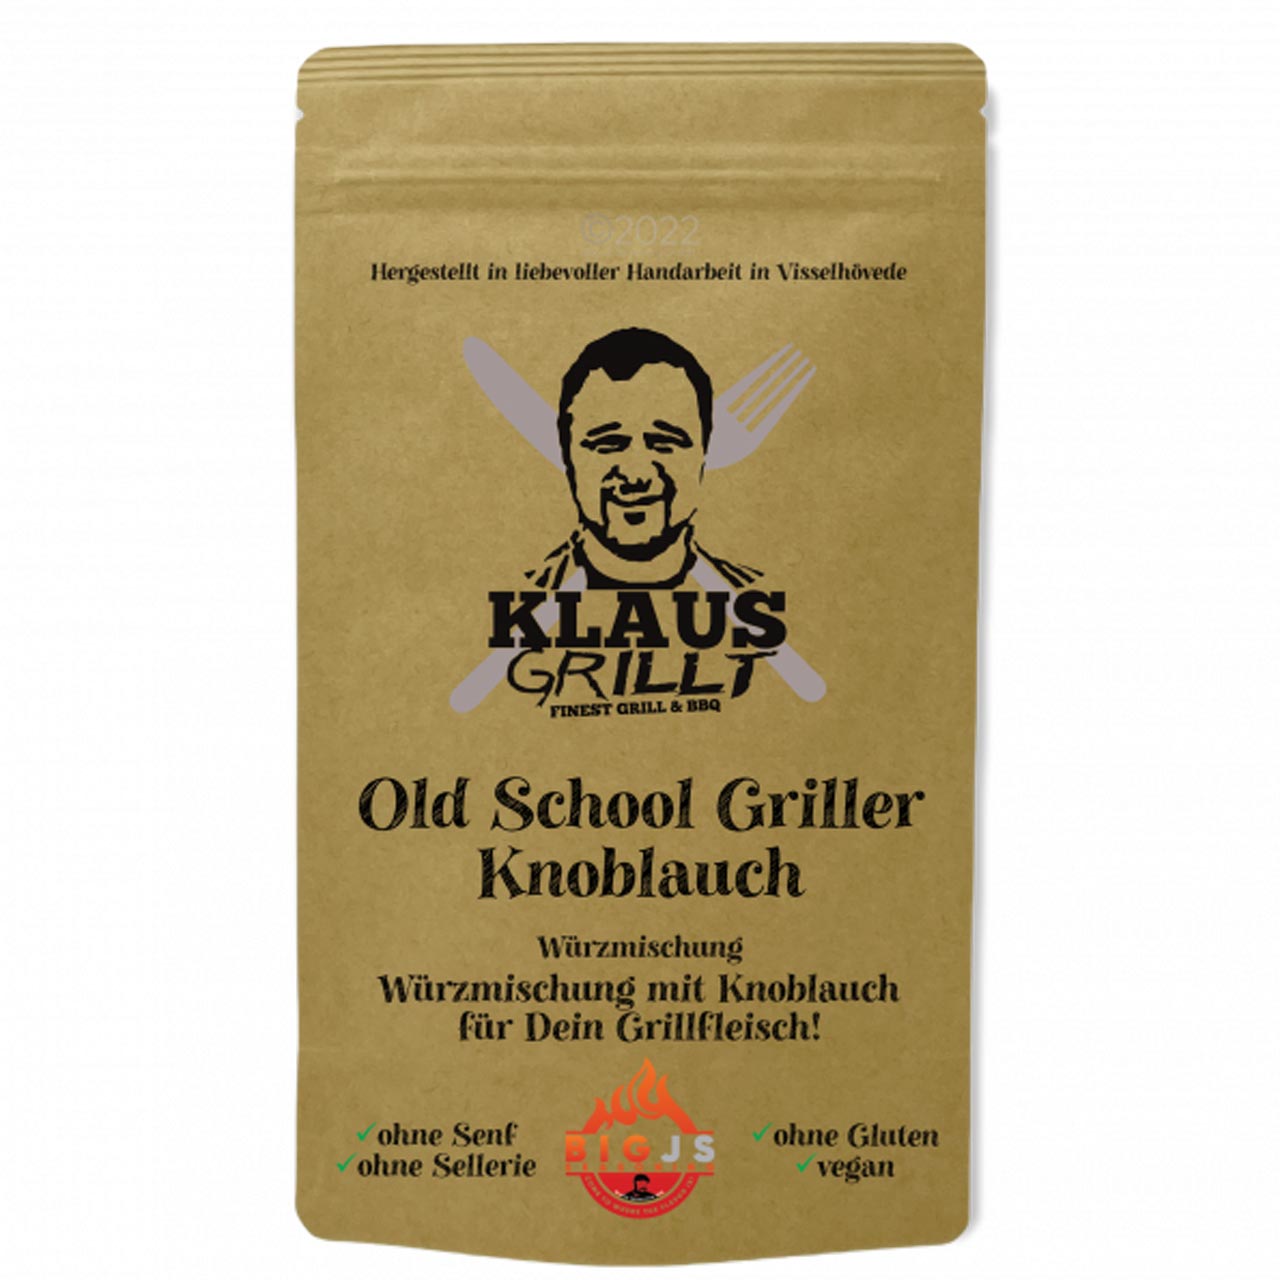 Klaus Grillt - Old School Griller (Knoblauch) 250 g Standbeutel